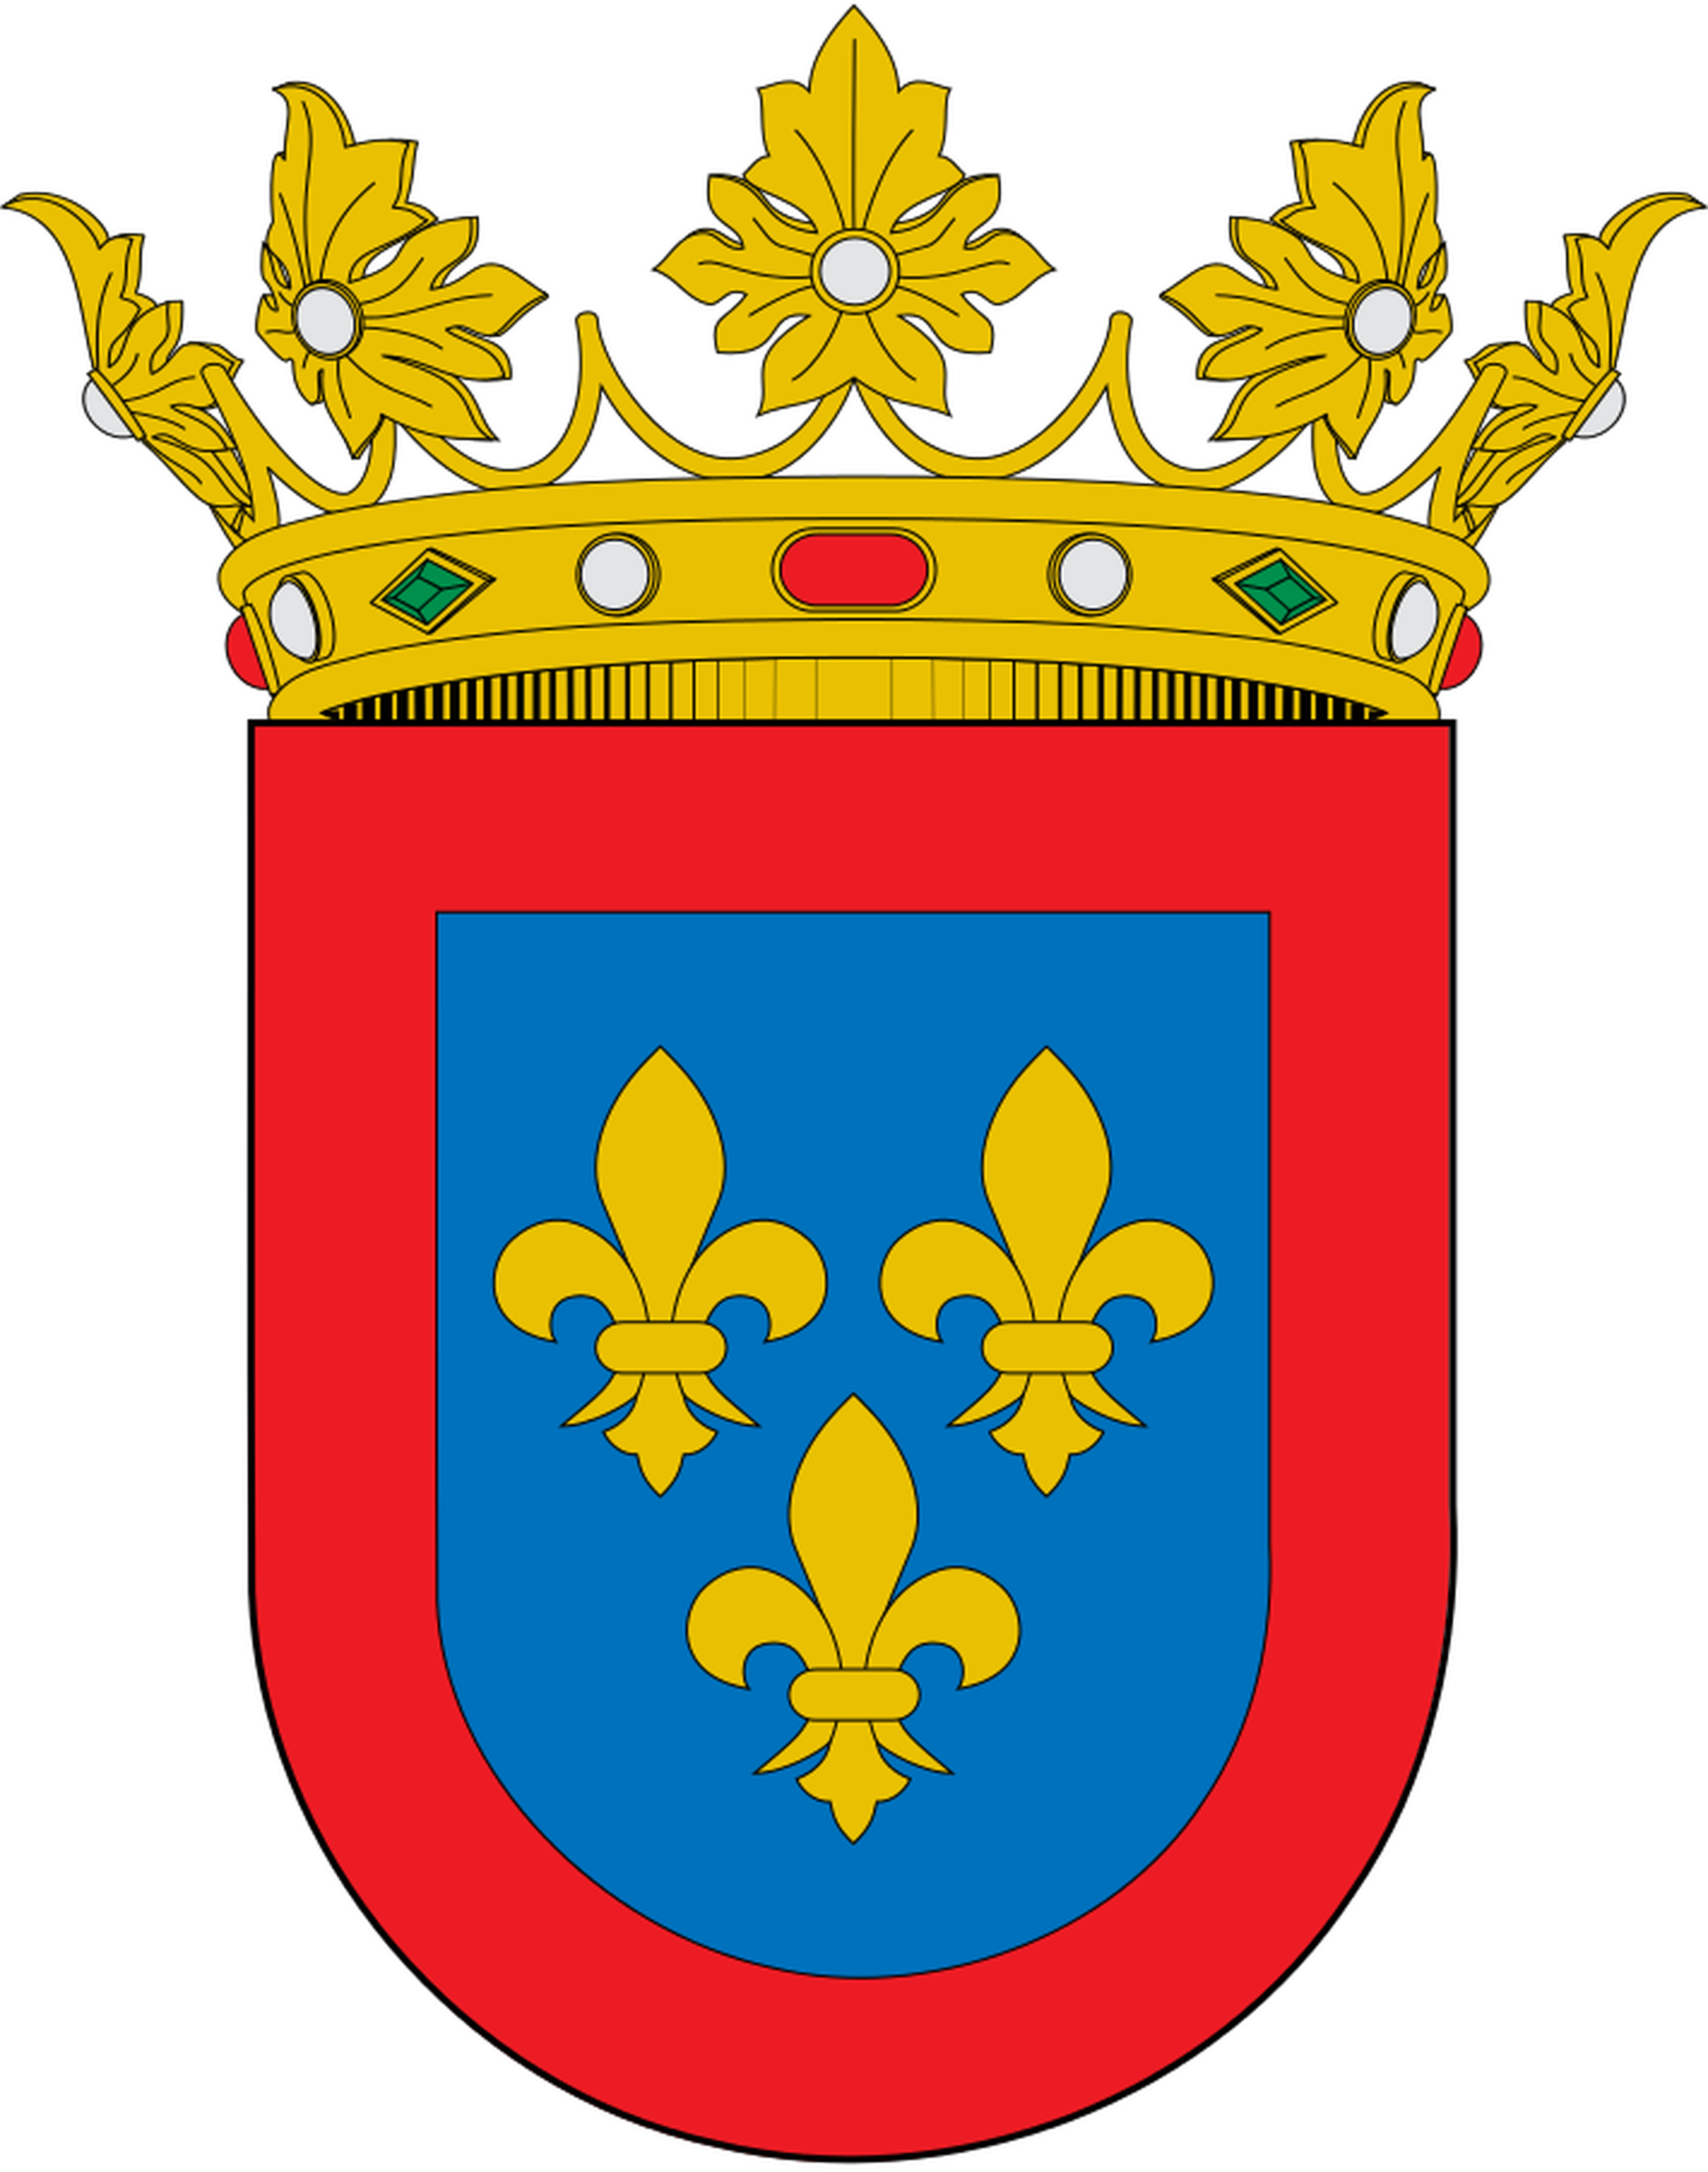 Escudo de los ducados creados para Borbones españoles